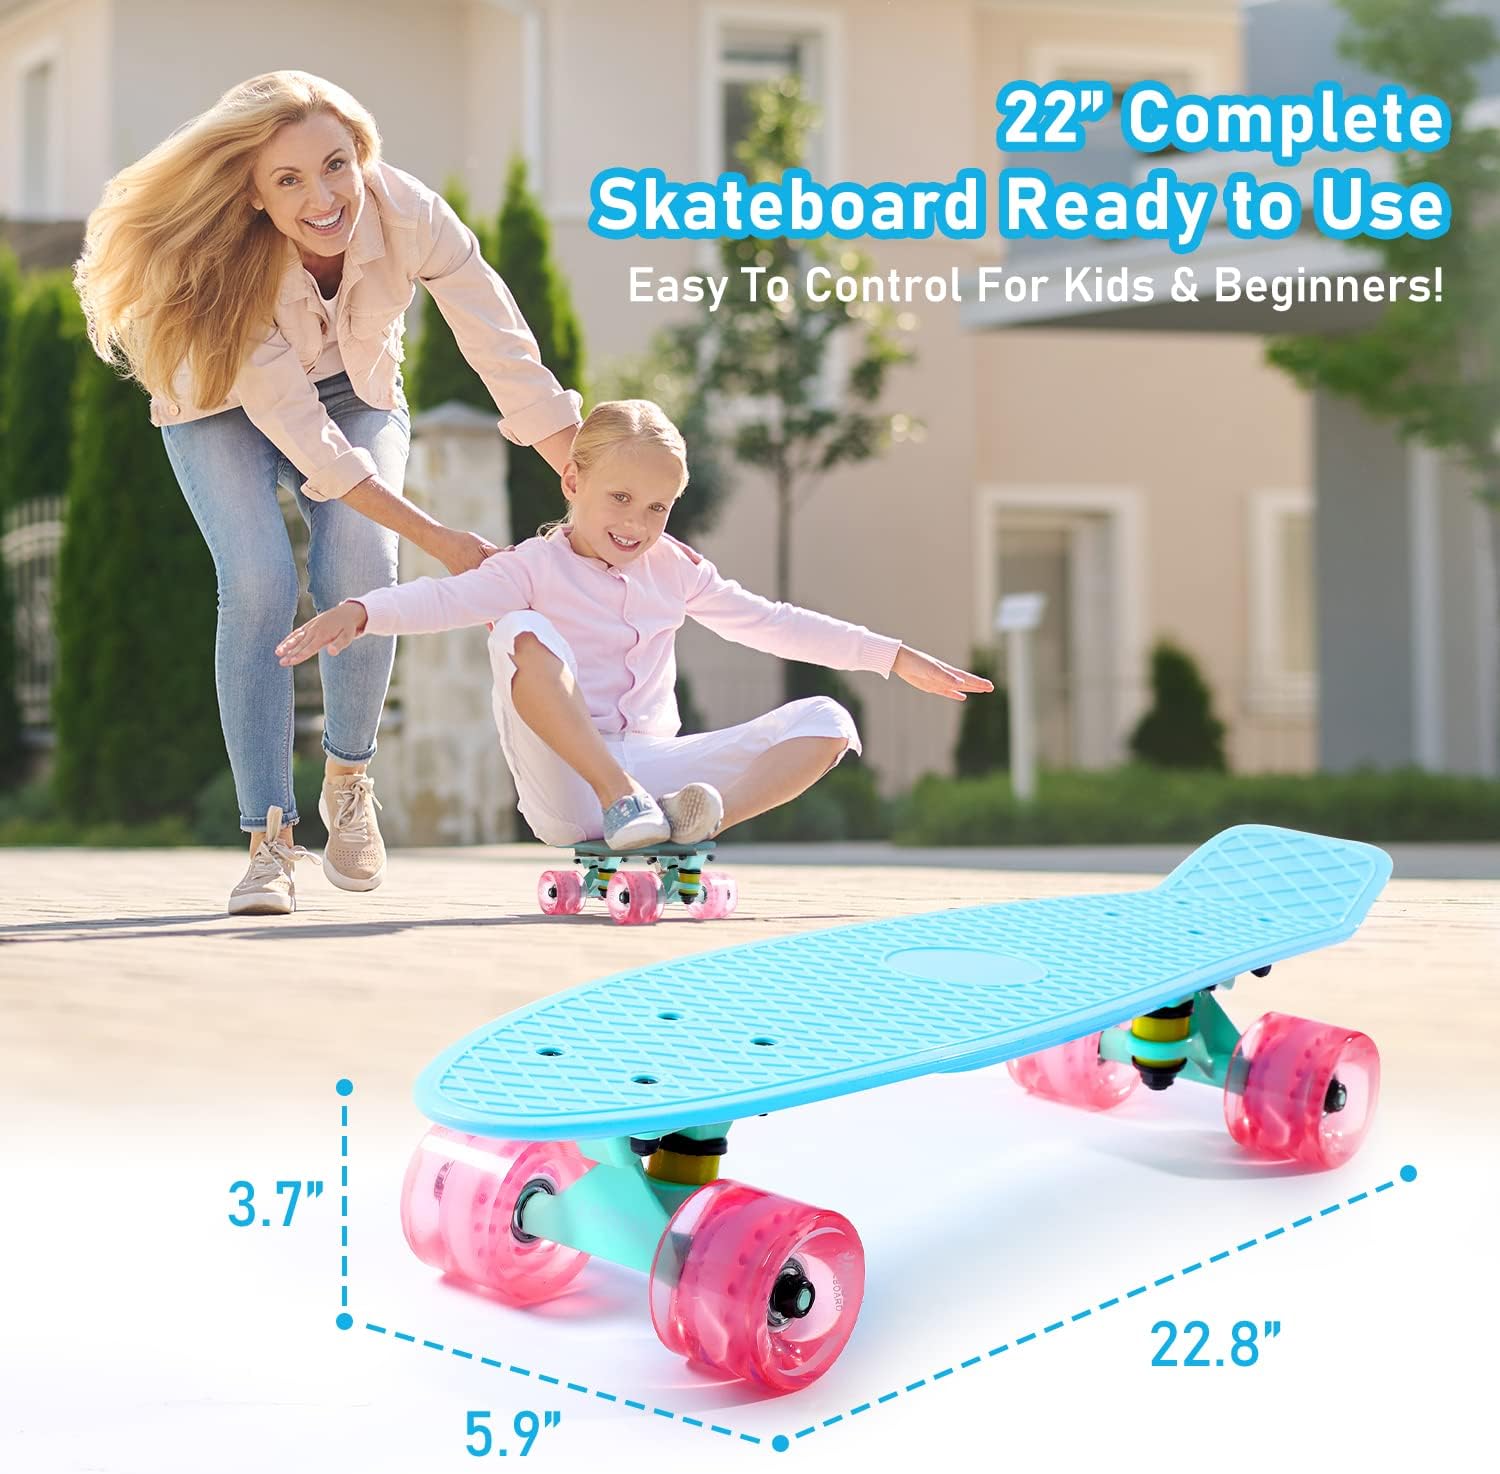 Cruiser Skateboard for Kids Ages 6-12 Completed Skateboards for Girls Boys Beginners, Gift Idea Mini 22 Plastic Skate Board